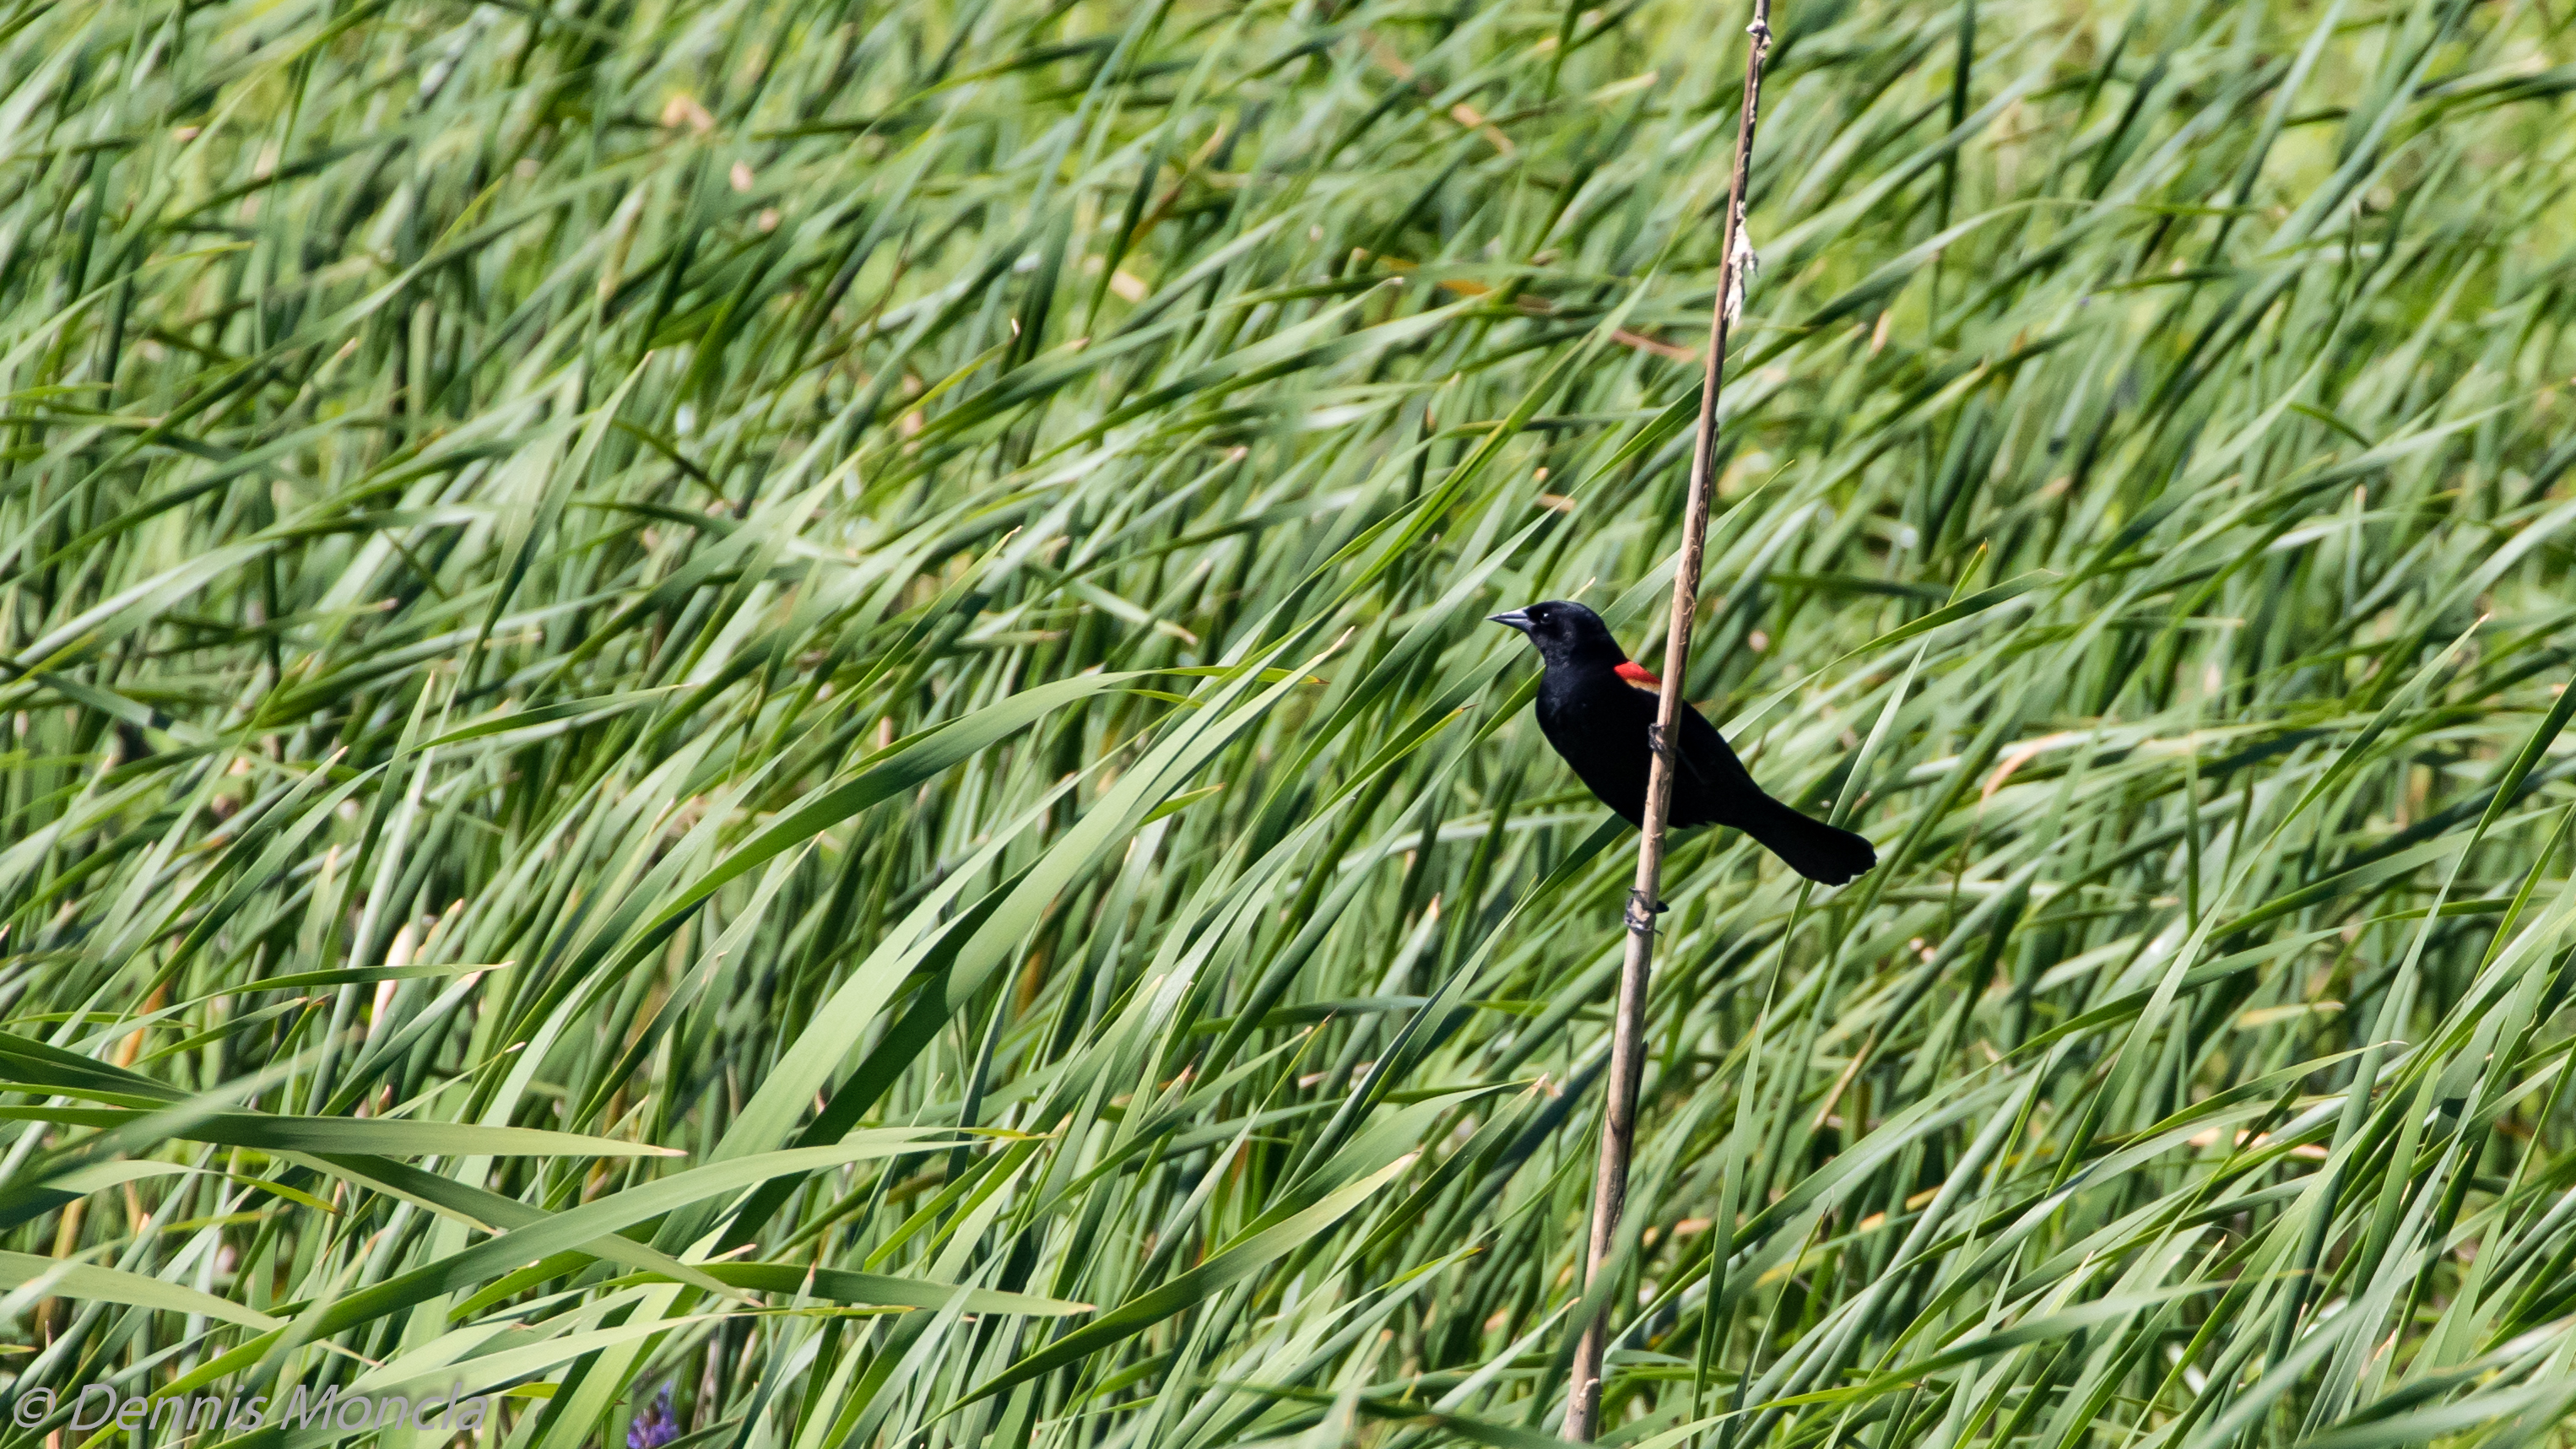 Red Wing Black Bird in Grass.jpg